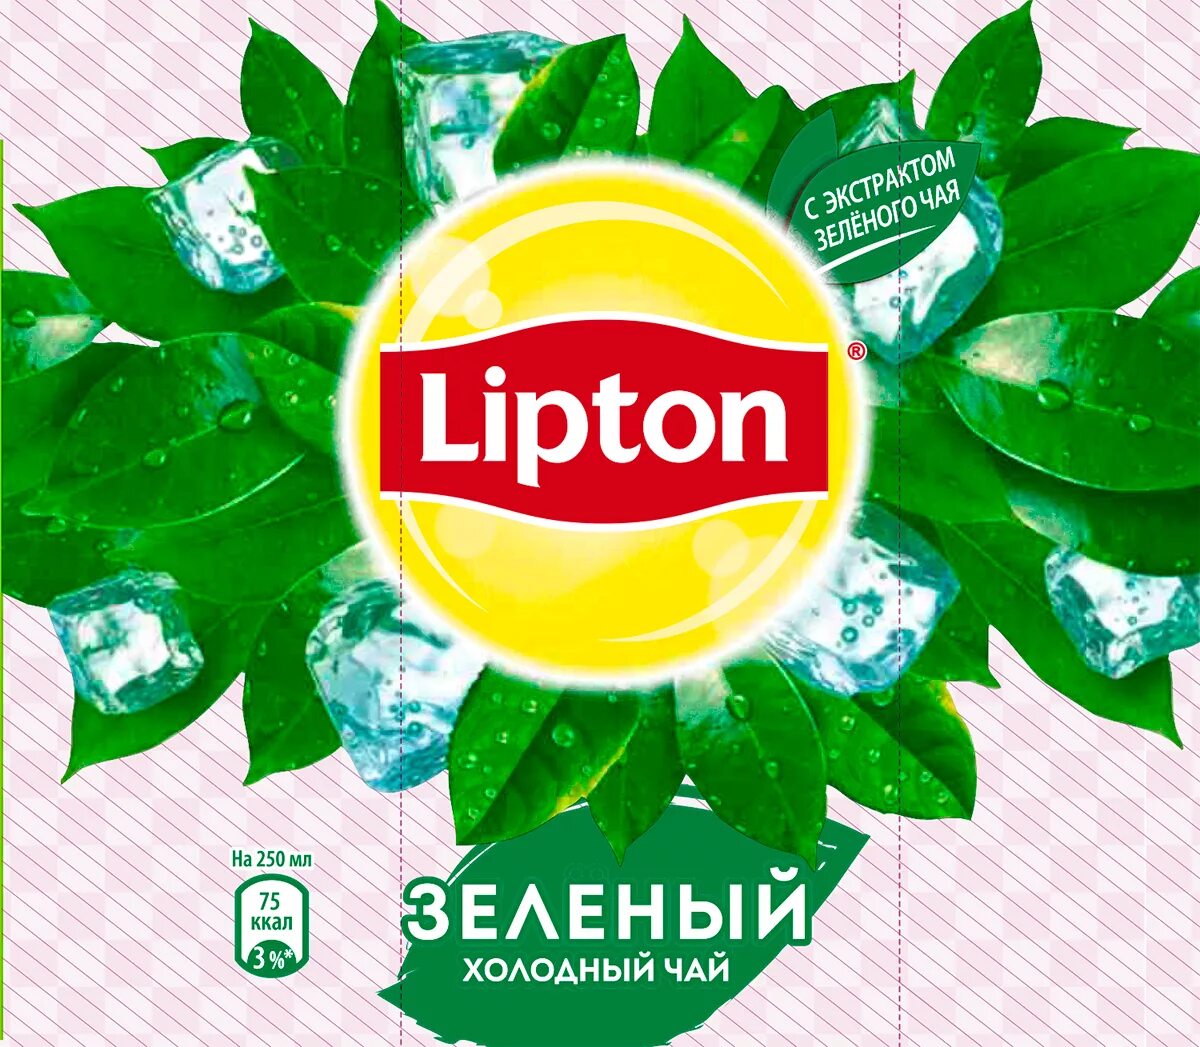 Холодный зеленый чай Липтон этикетка. Холодный чай Липтон логотип. Надпись Липтон зеленый чай. Этикетка Липтон холодный чай.